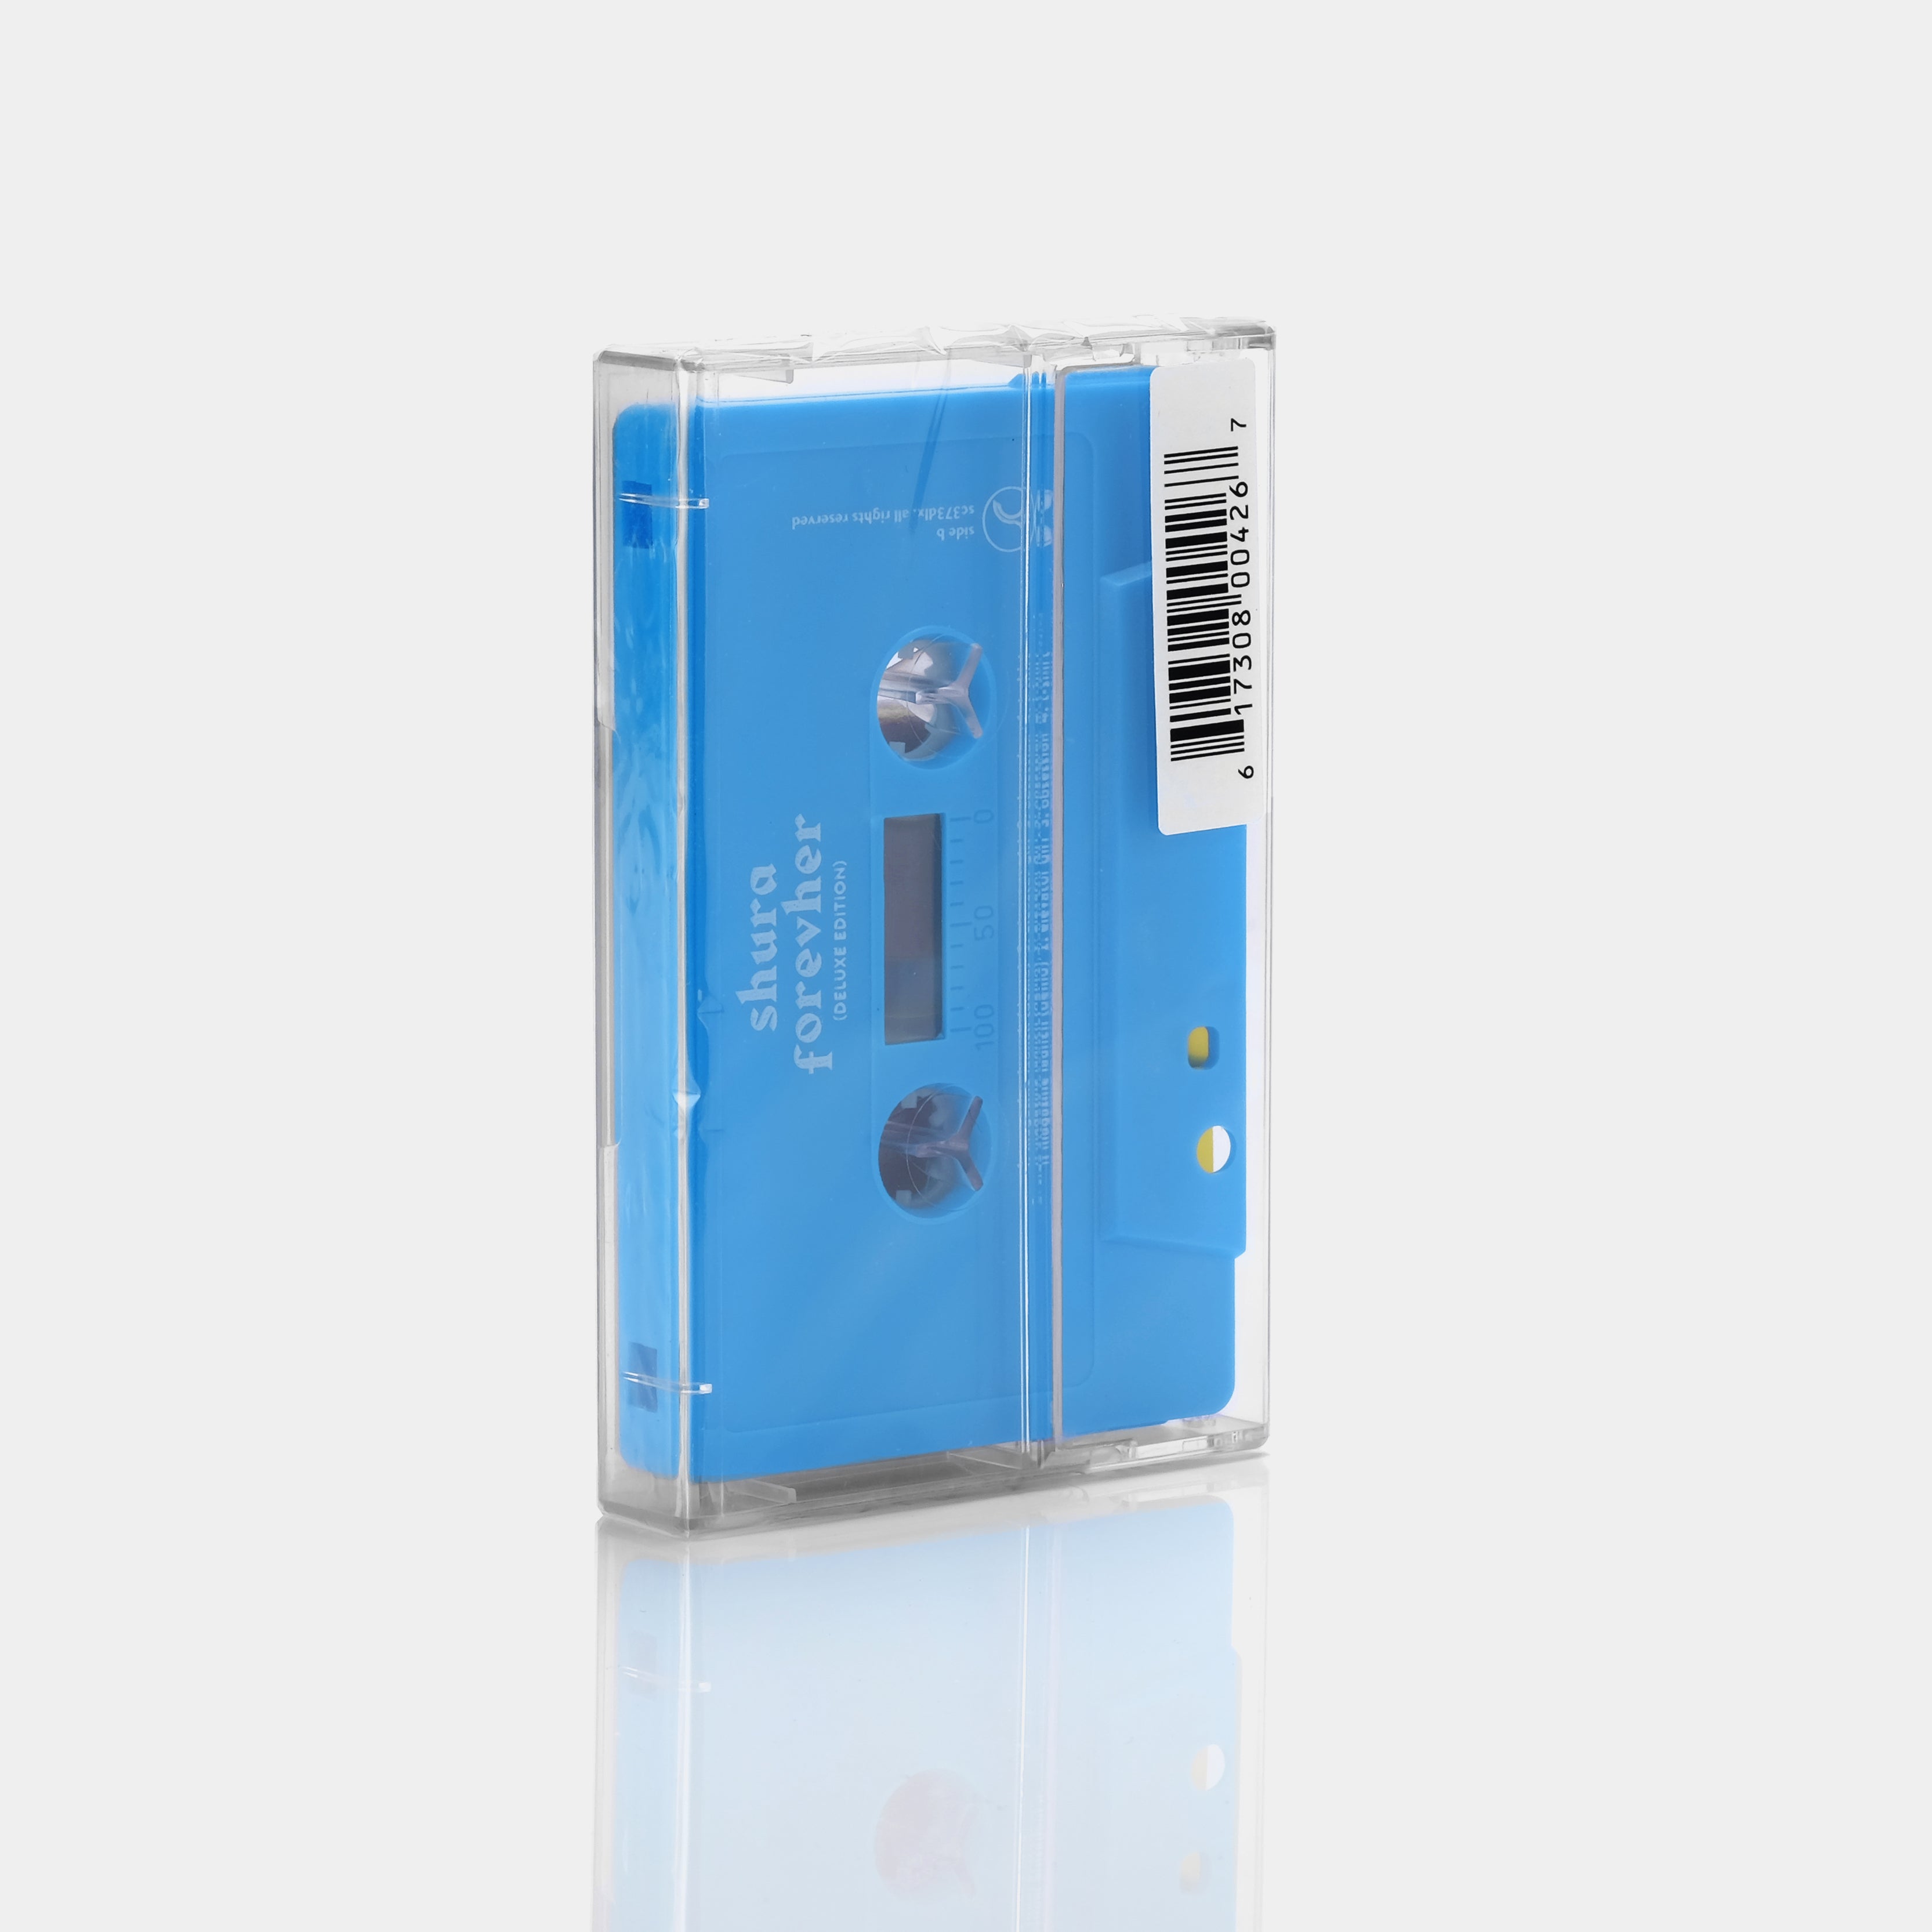 Shura - Forevher Cassette Tape